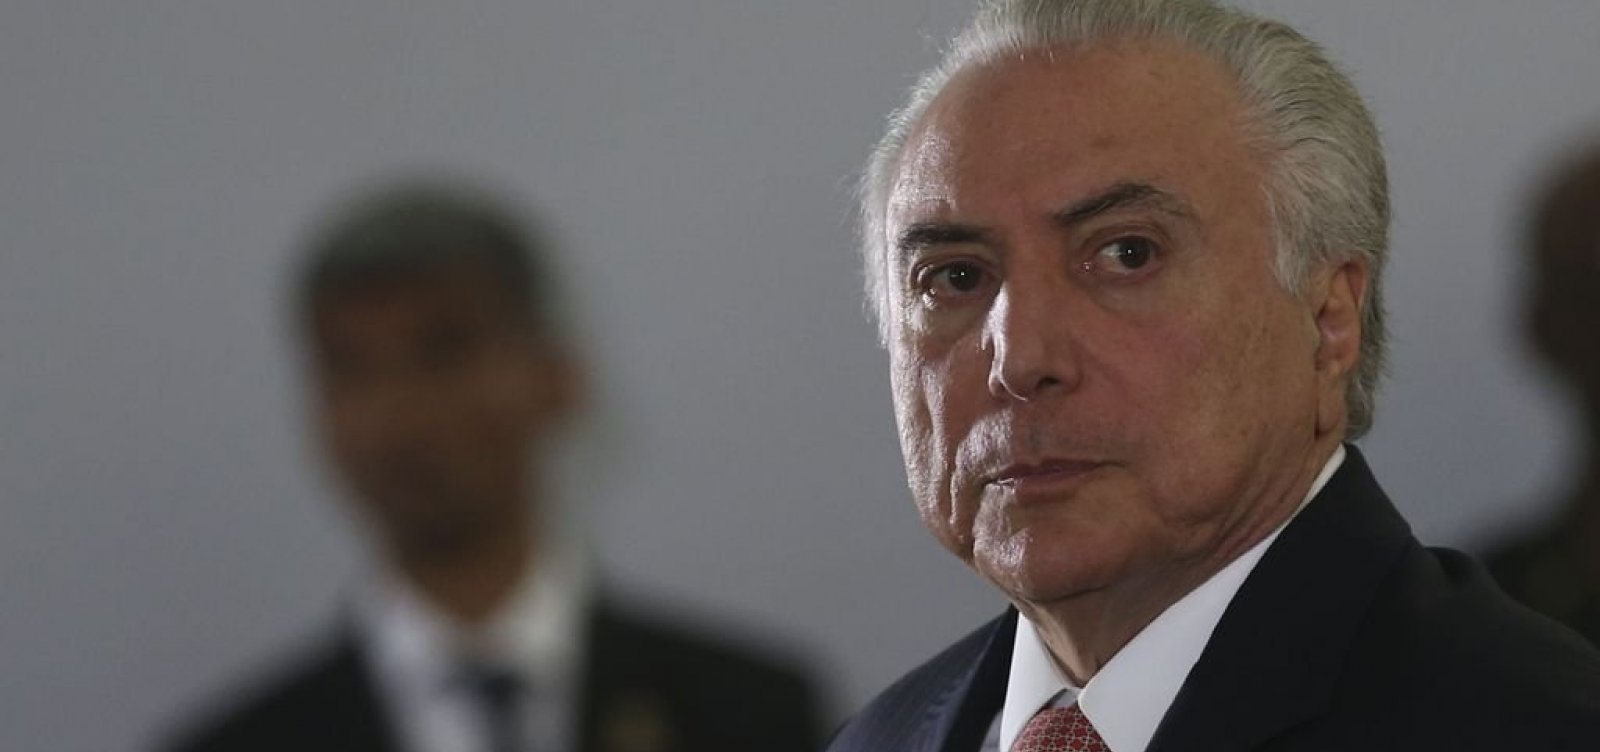 Temer assina MP que libera até 100% de capital estrangeiro em aéreas brasileiras